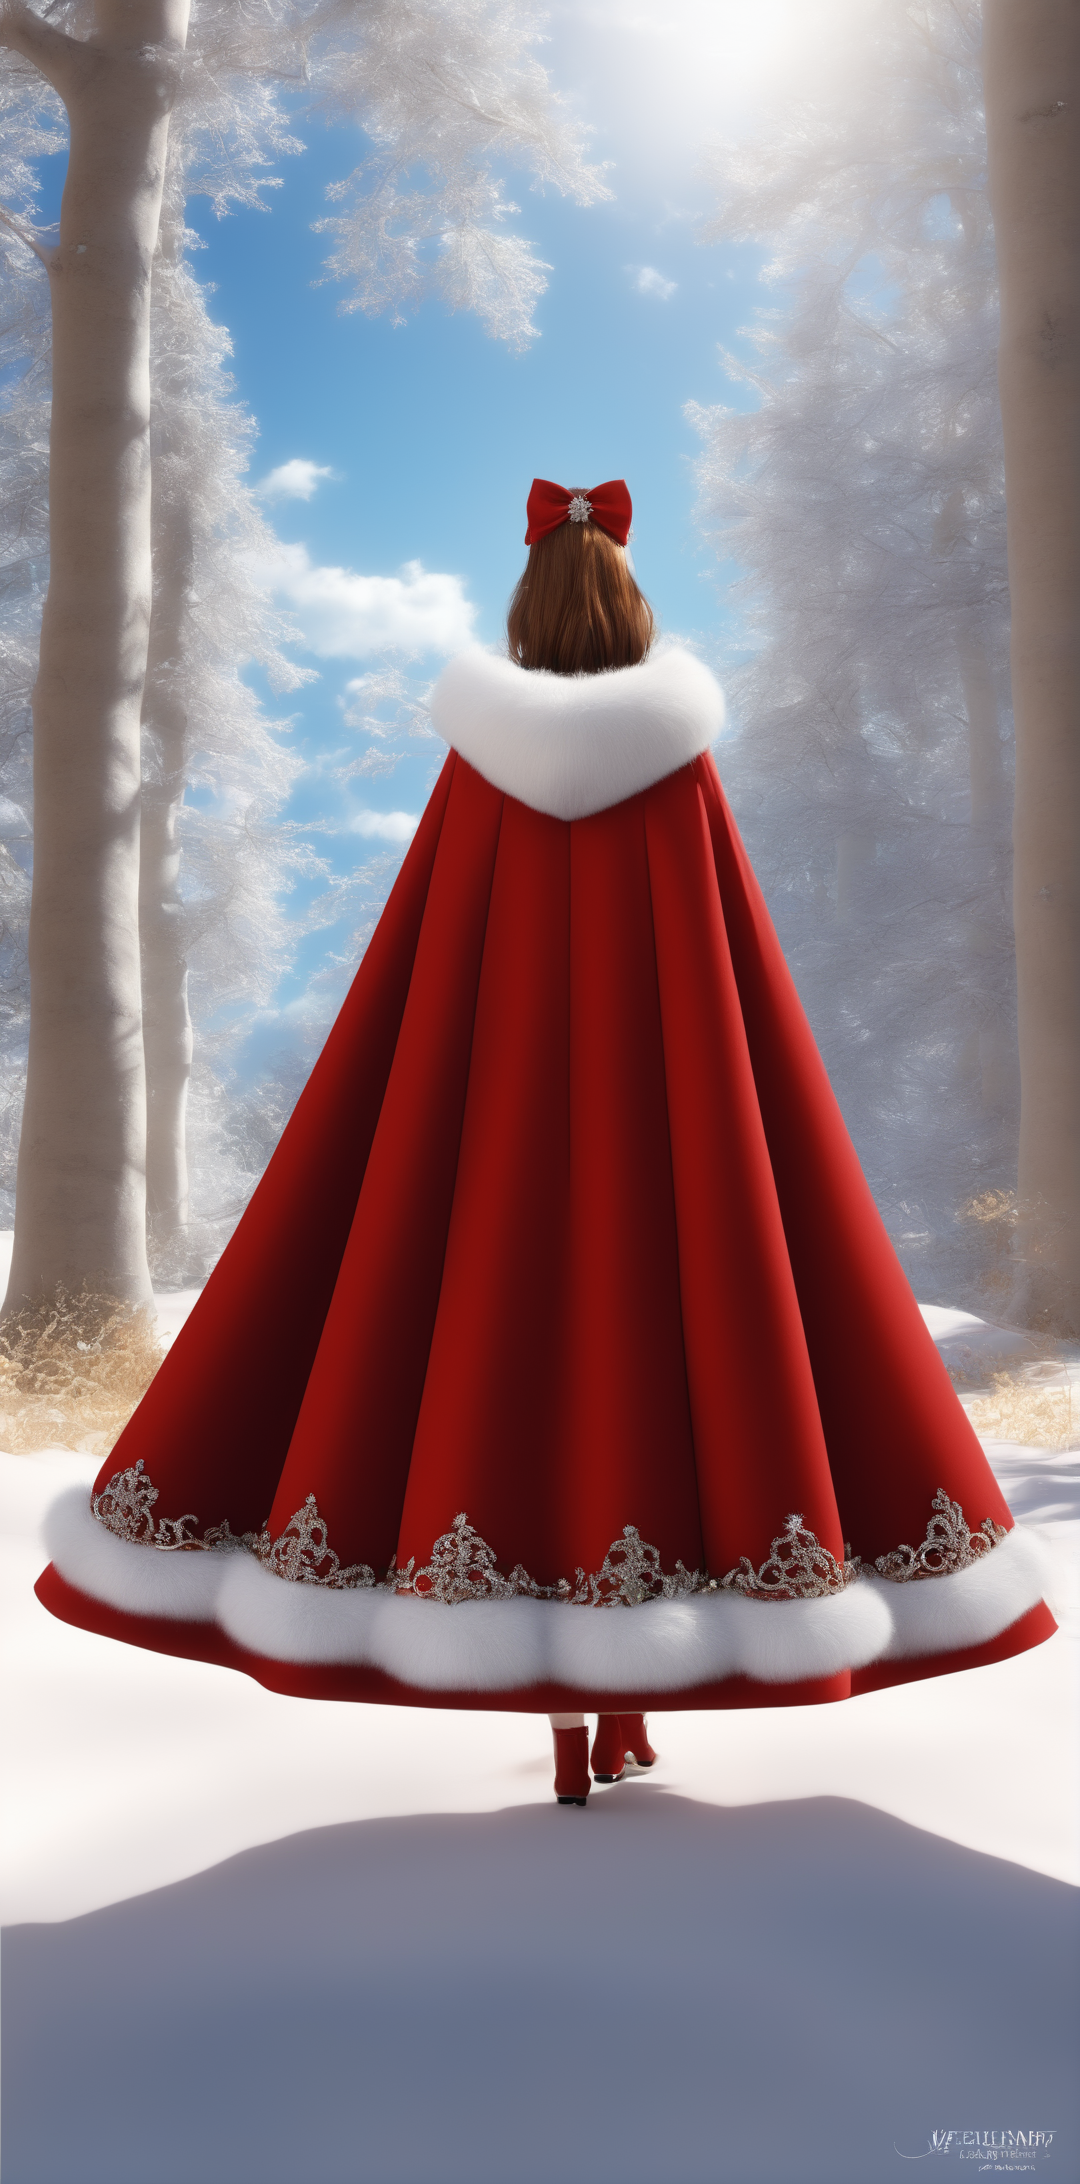 雪地里披着红色貂绒大披风的女孩3